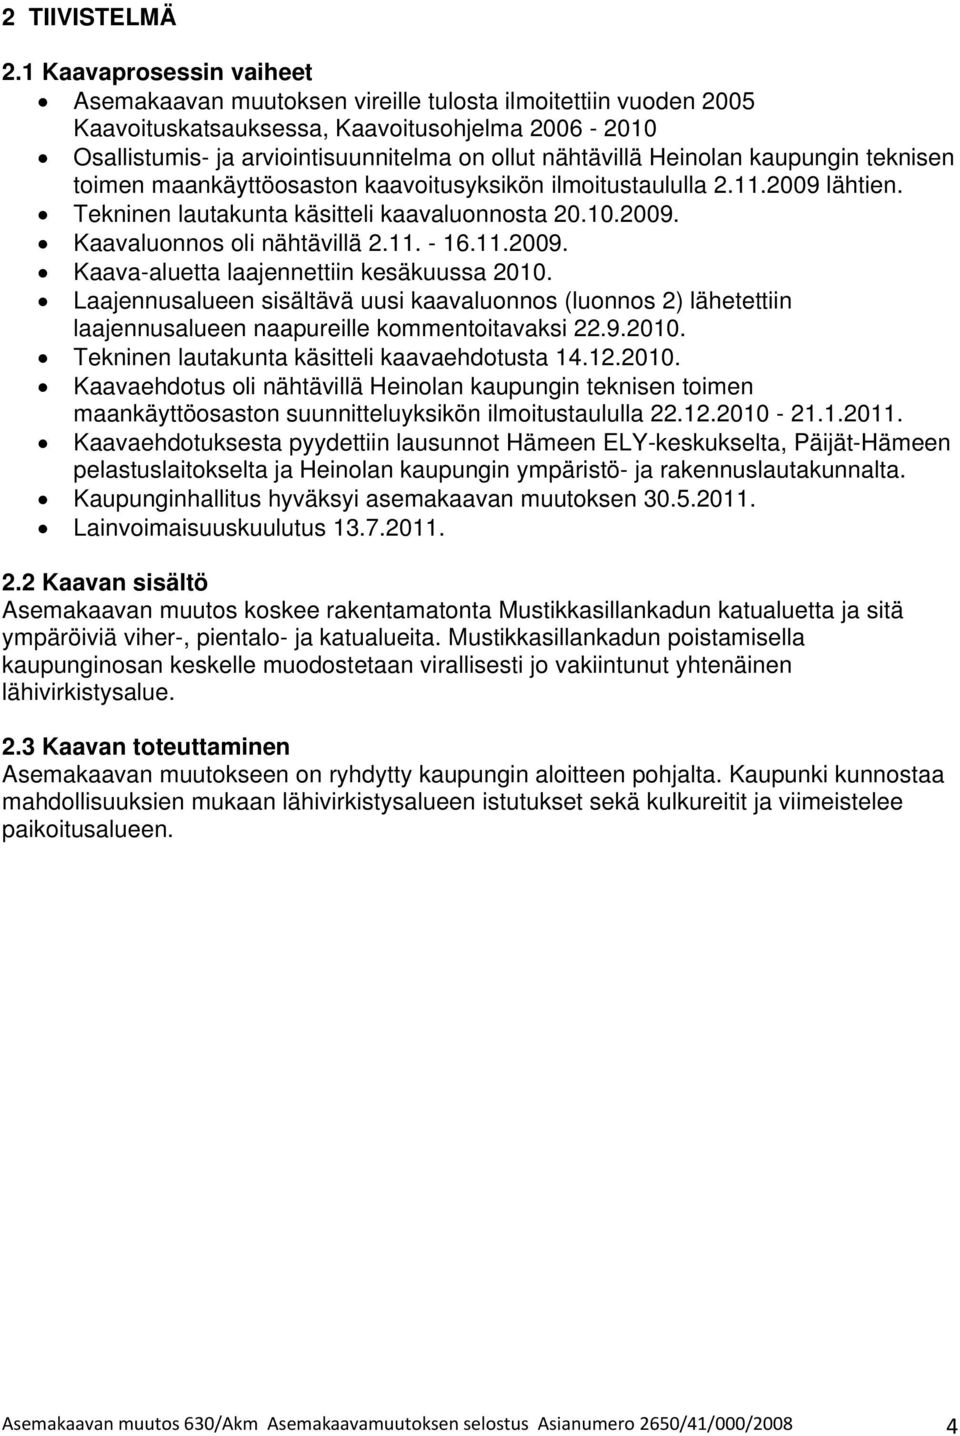 Heinolan kaupungin teknisen toimen maankäyttöosaston kaavoitusyksikön ilmoitustaululla 2.11.2009 lähtien. Tekninen lautakunta käsitteli kaavaluonnosta 20.10.2009. Kaavaluonnos oli nähtävillä 2.11. - 16.